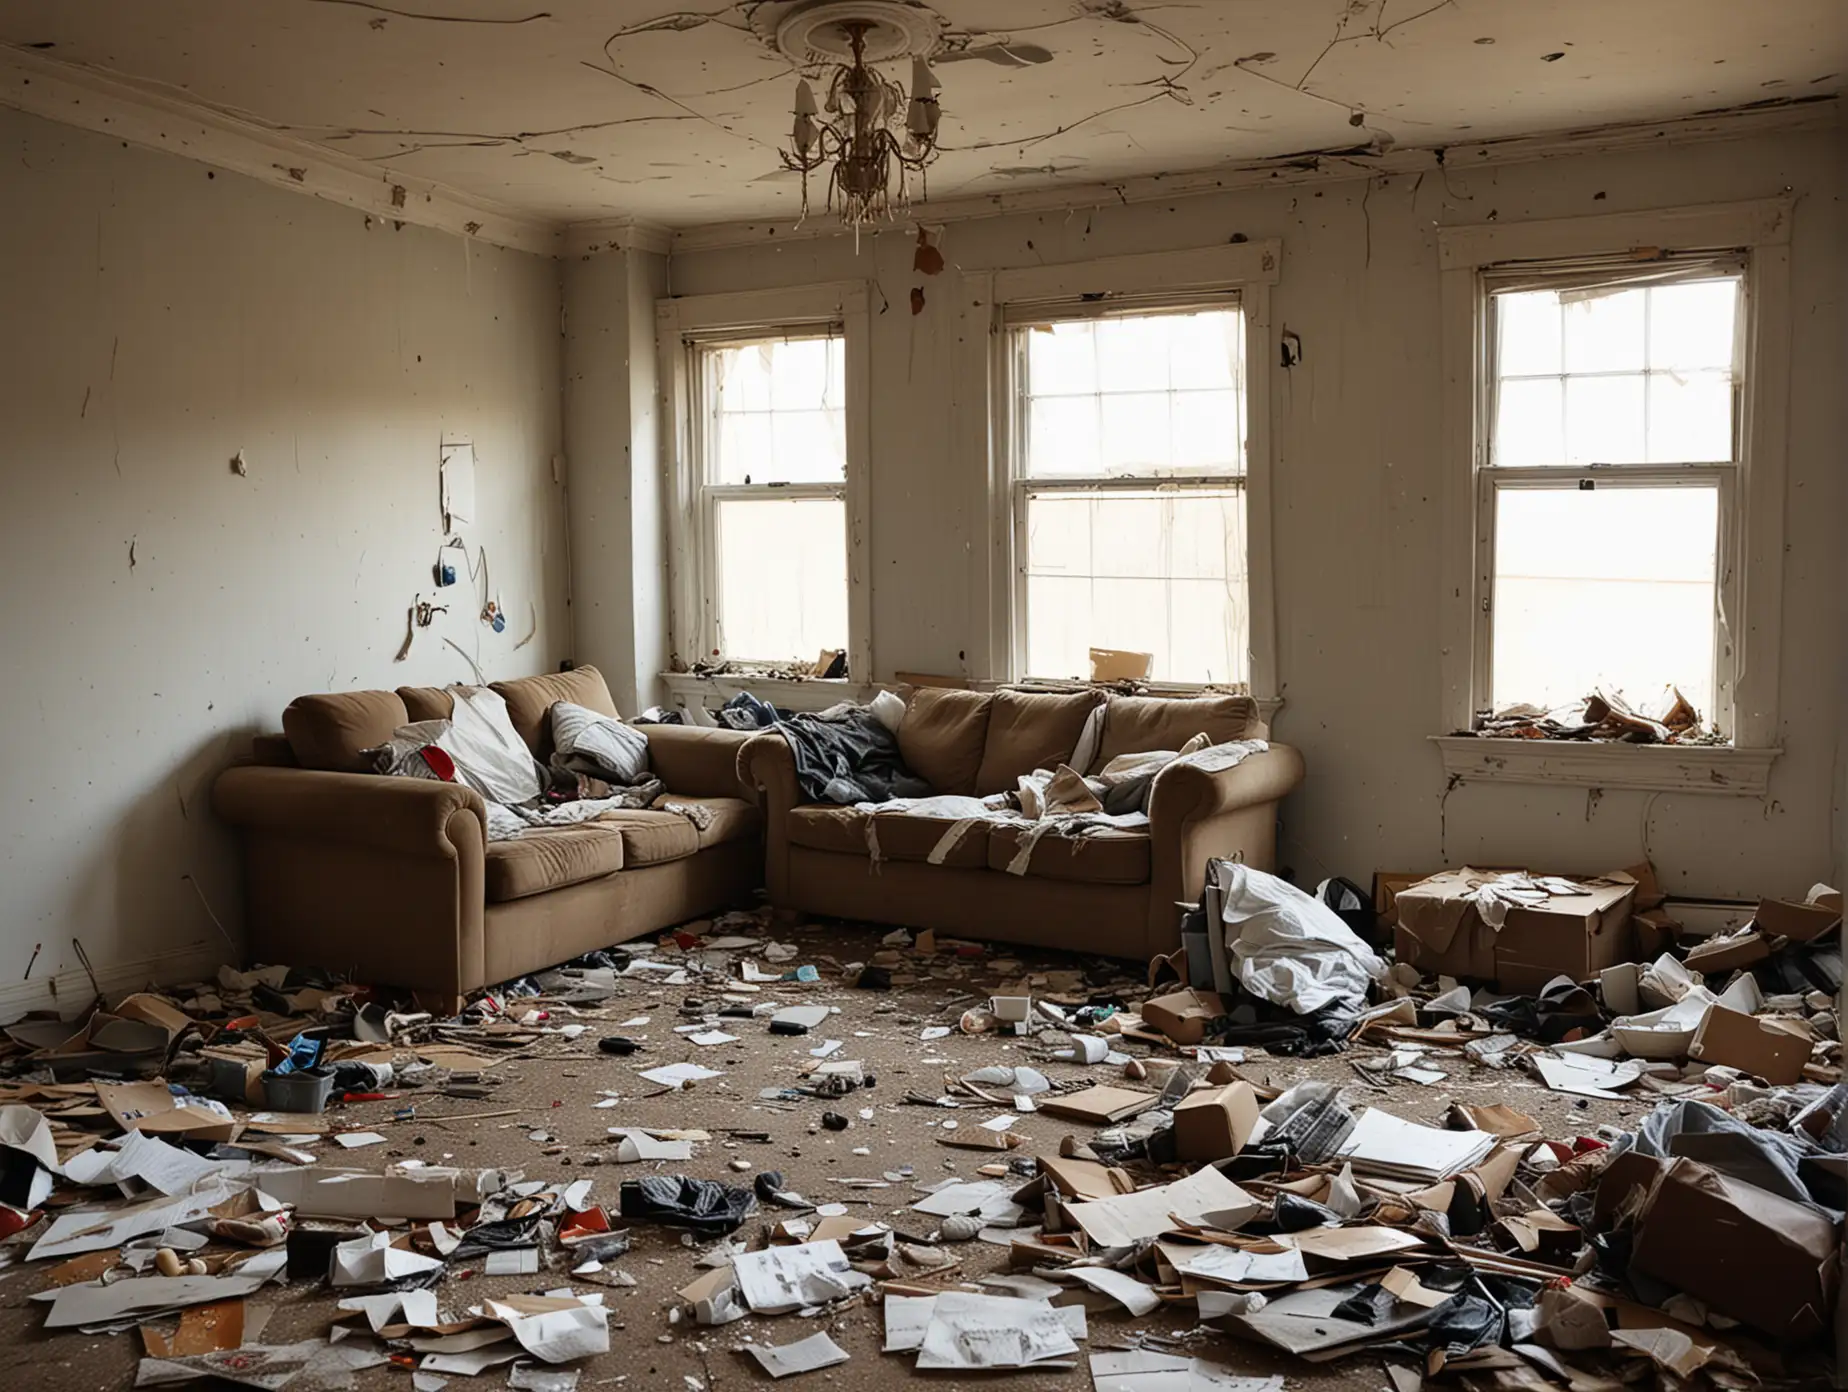 trashed living room